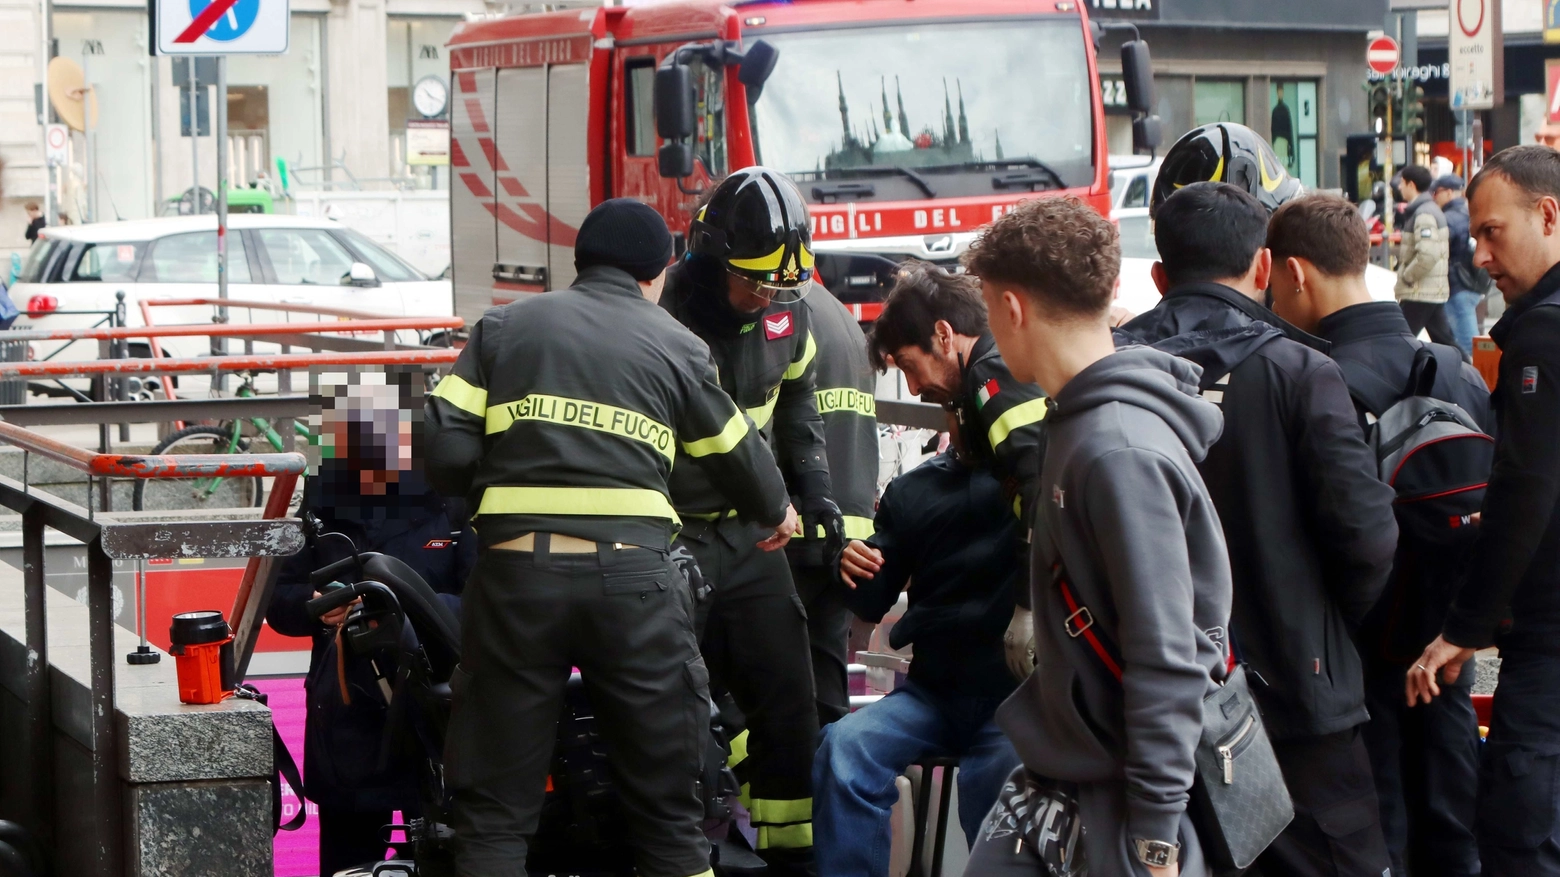 Uomo in carrozzina liberato dai pompieri alla metropolitana in piazza Duomo